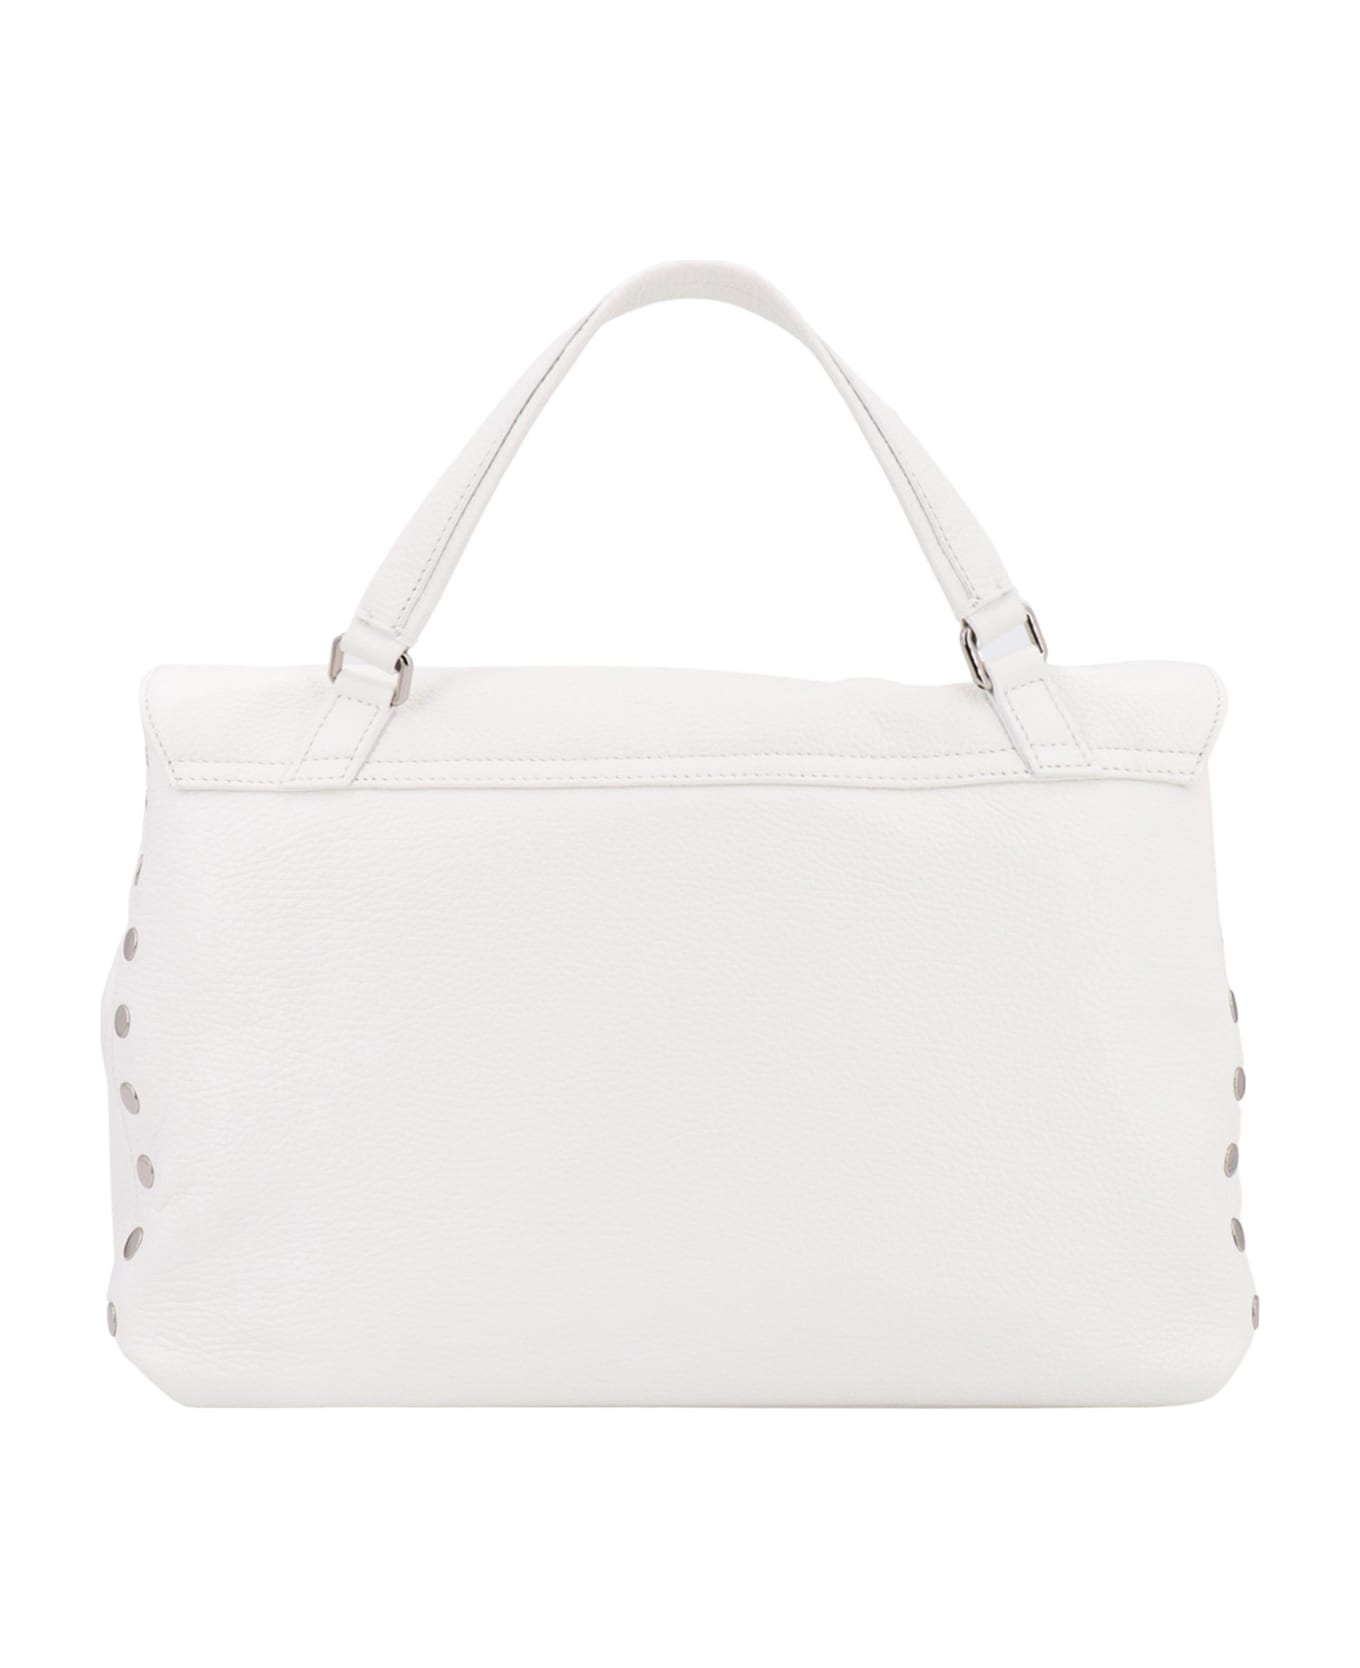 Zanellato Postina Daily M Handbag - White トートバッグ